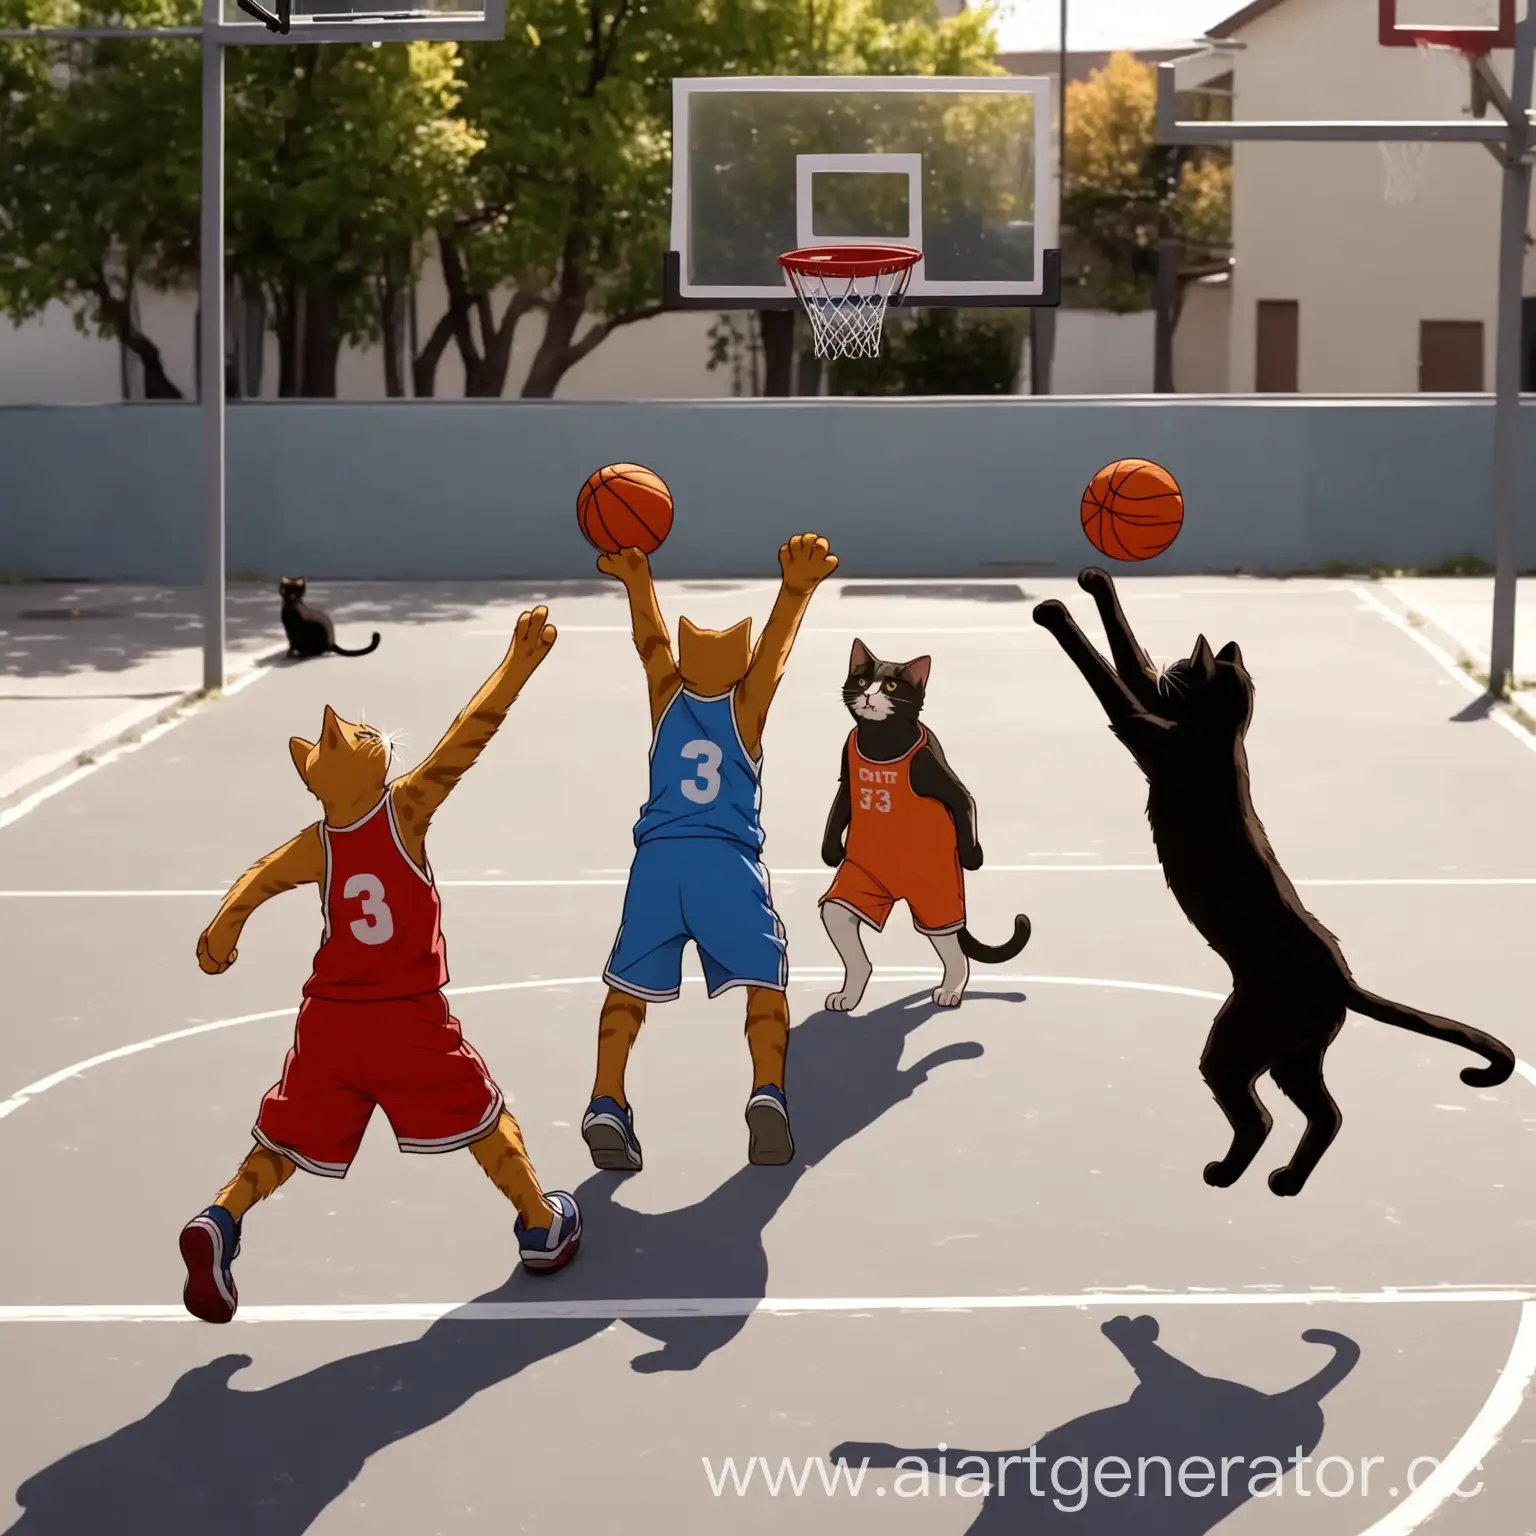 Коты играют в уличный баскетбол три на три